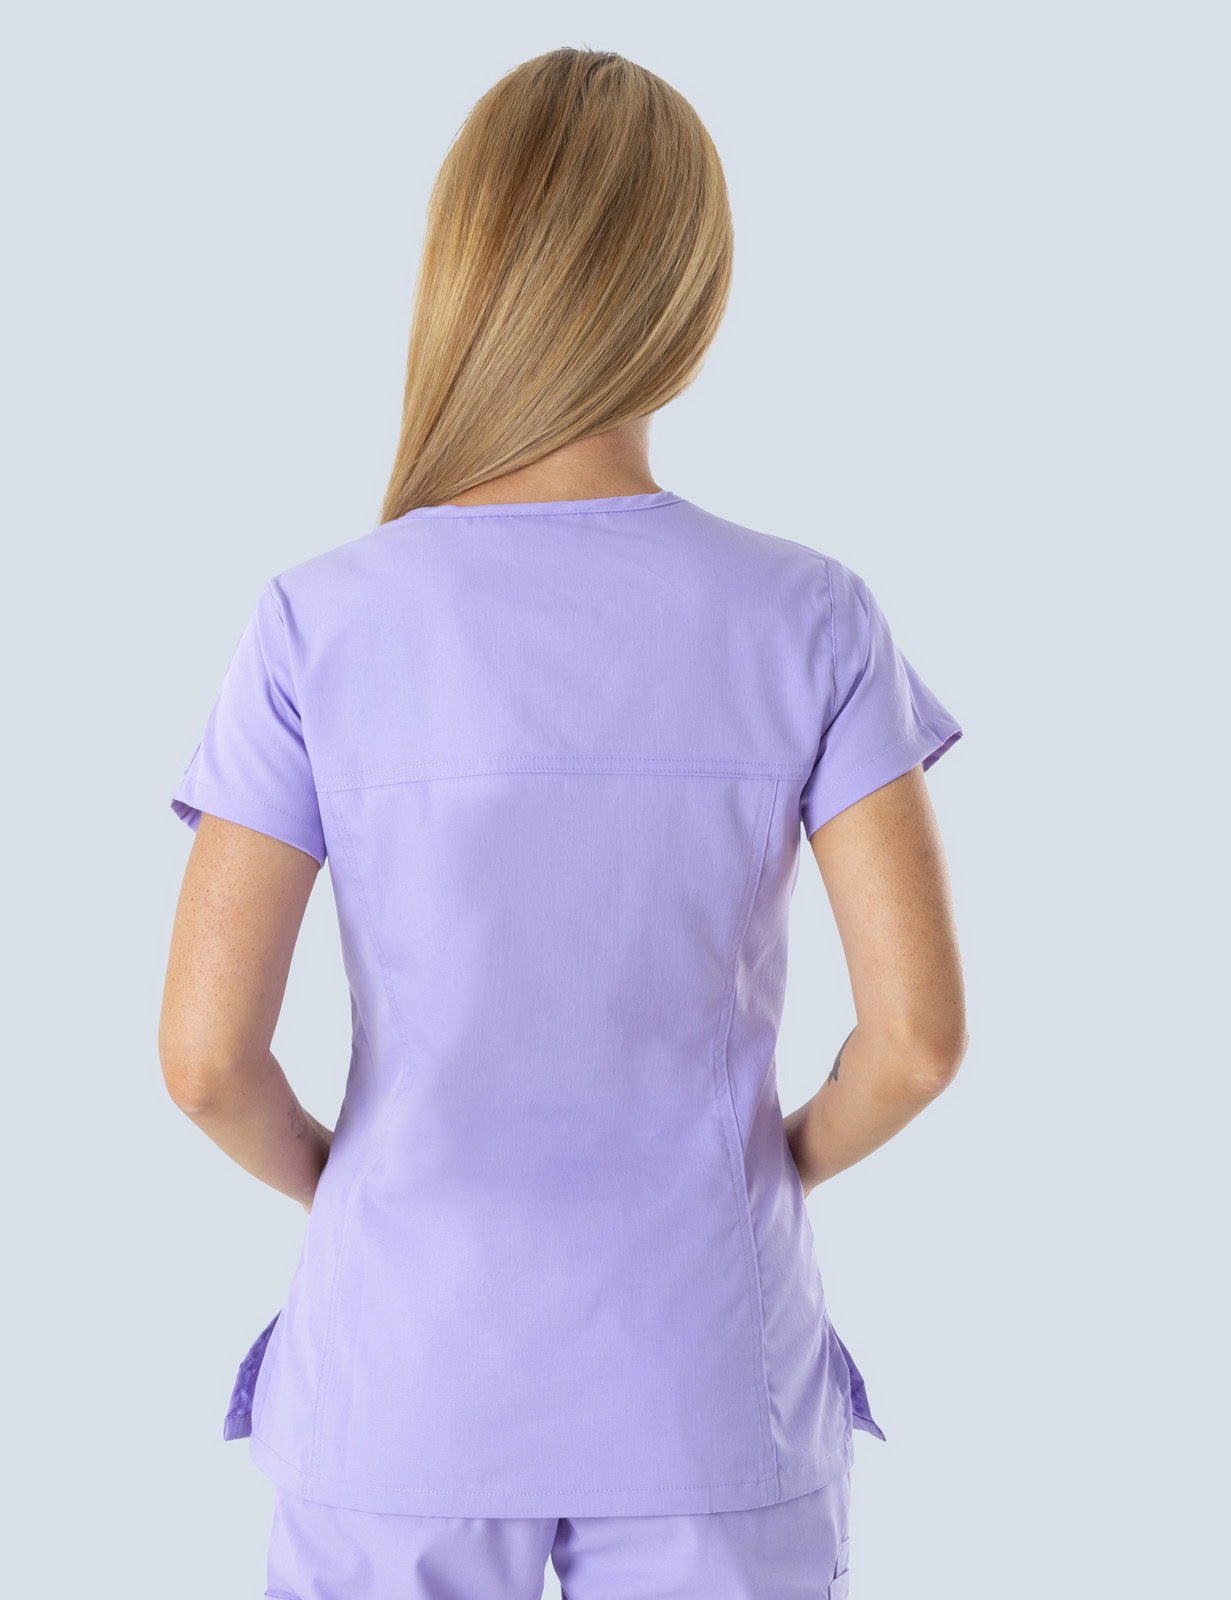 Queensland Children's Hospital Emergency Department Doctor Uniform Top Bundle (Women's Fit Top in Lilac  incl Logos)